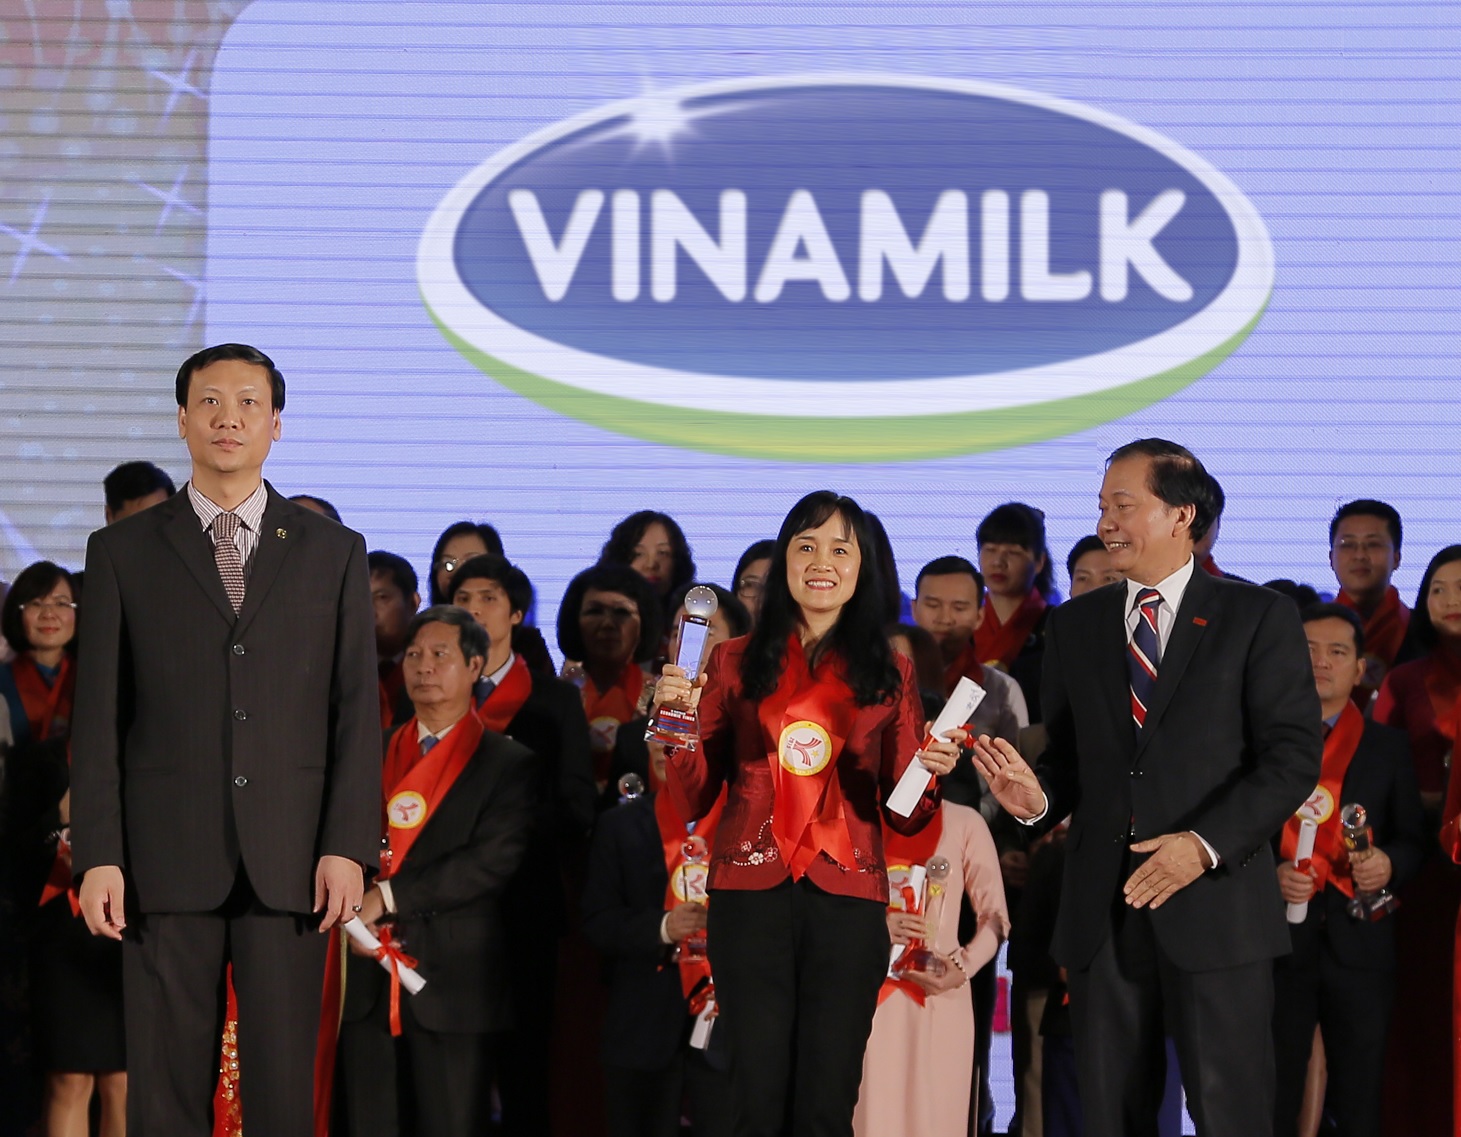 Bà Nguyễn Minh Tâm, Giám đốc Chi nhánh Vinamilk tại Hà Nội, đại diện công ty nhận giải thưởng Thương hiệu mạnh Việt Nam